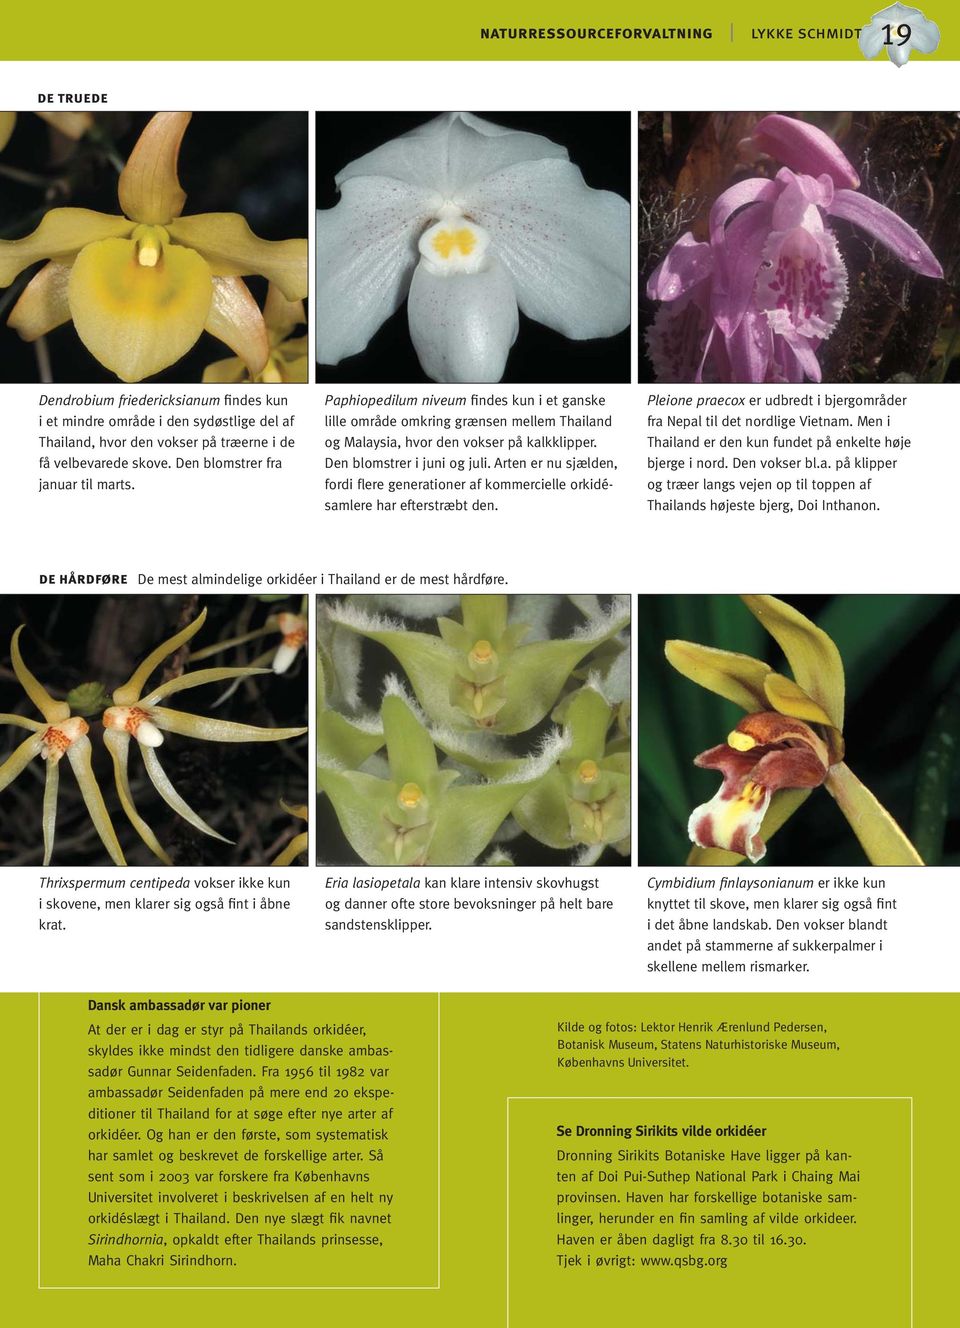 Arten er nu sjælden, fordi flere generationer af kommercielle orkidésamlere har efterstræbt den. Pleione praecox er udbredt i bjergområder fra Nepal til det nordlige Vietnam.